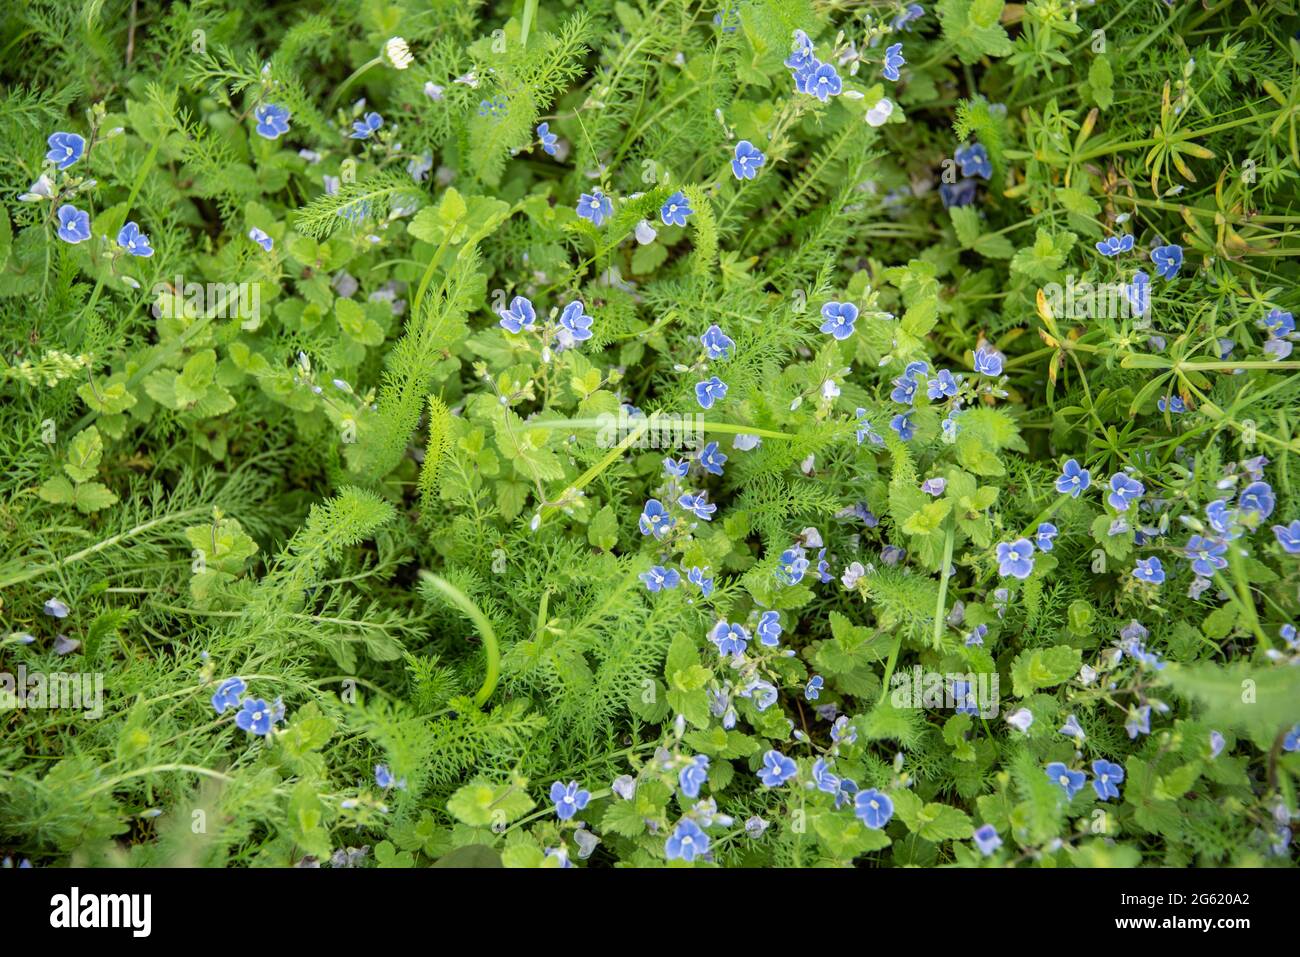 primer plano de un prado no cultivado con germander speedwell con pequeñas flores azules Foto de stock